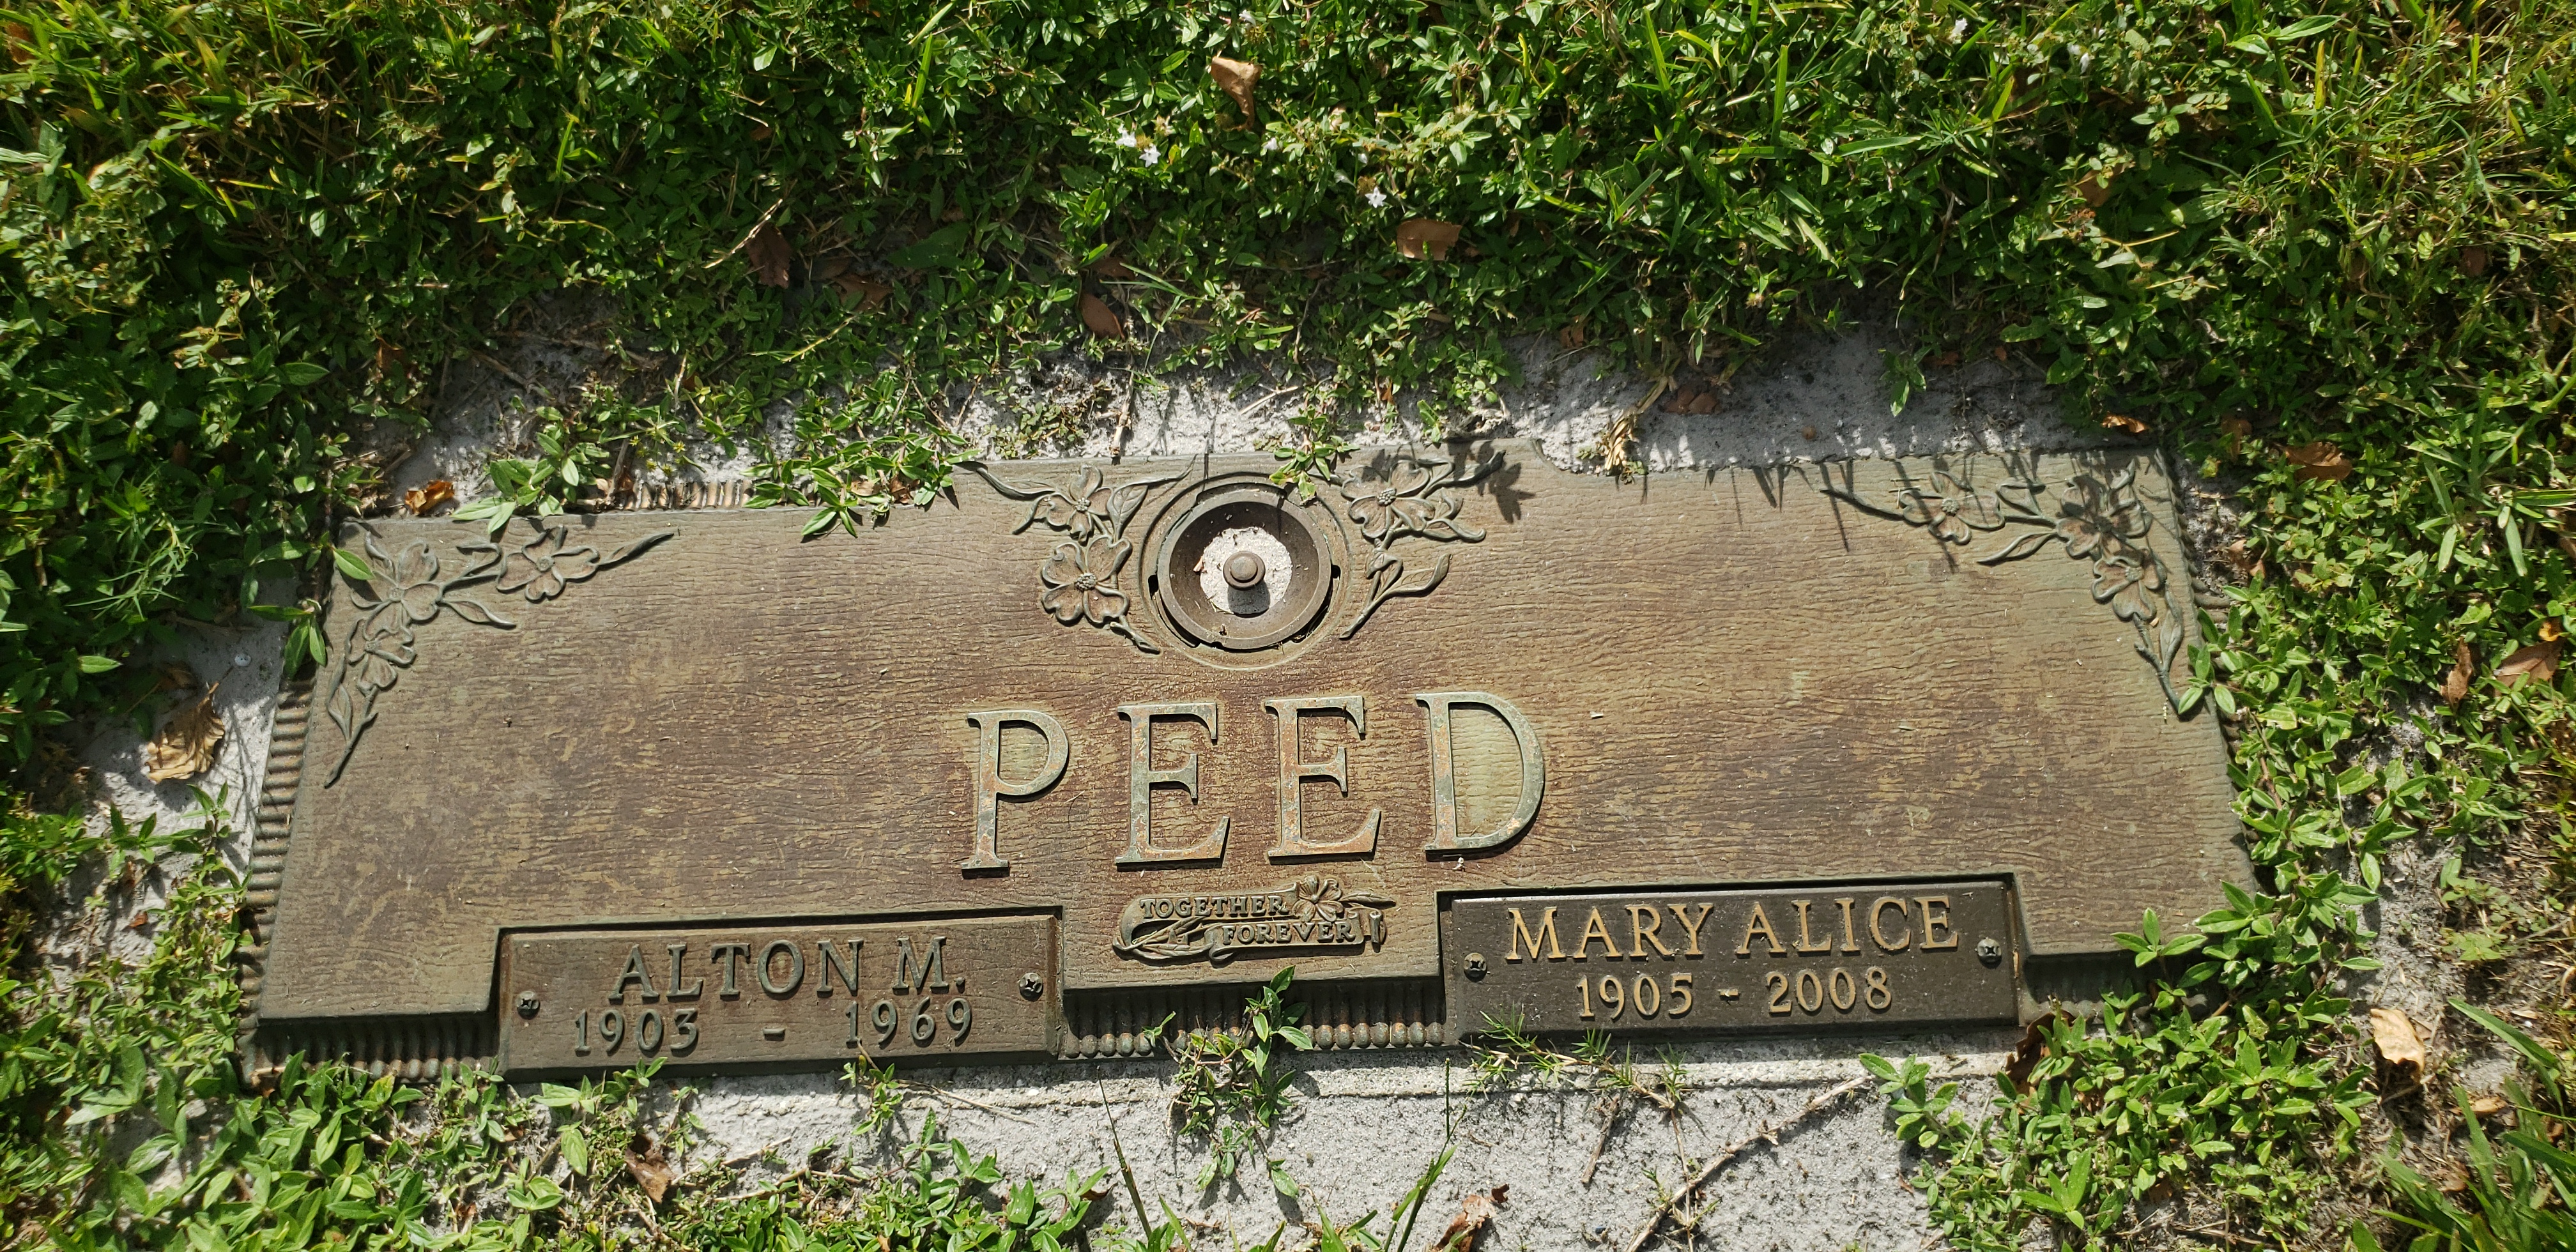 Mary Alice Peed